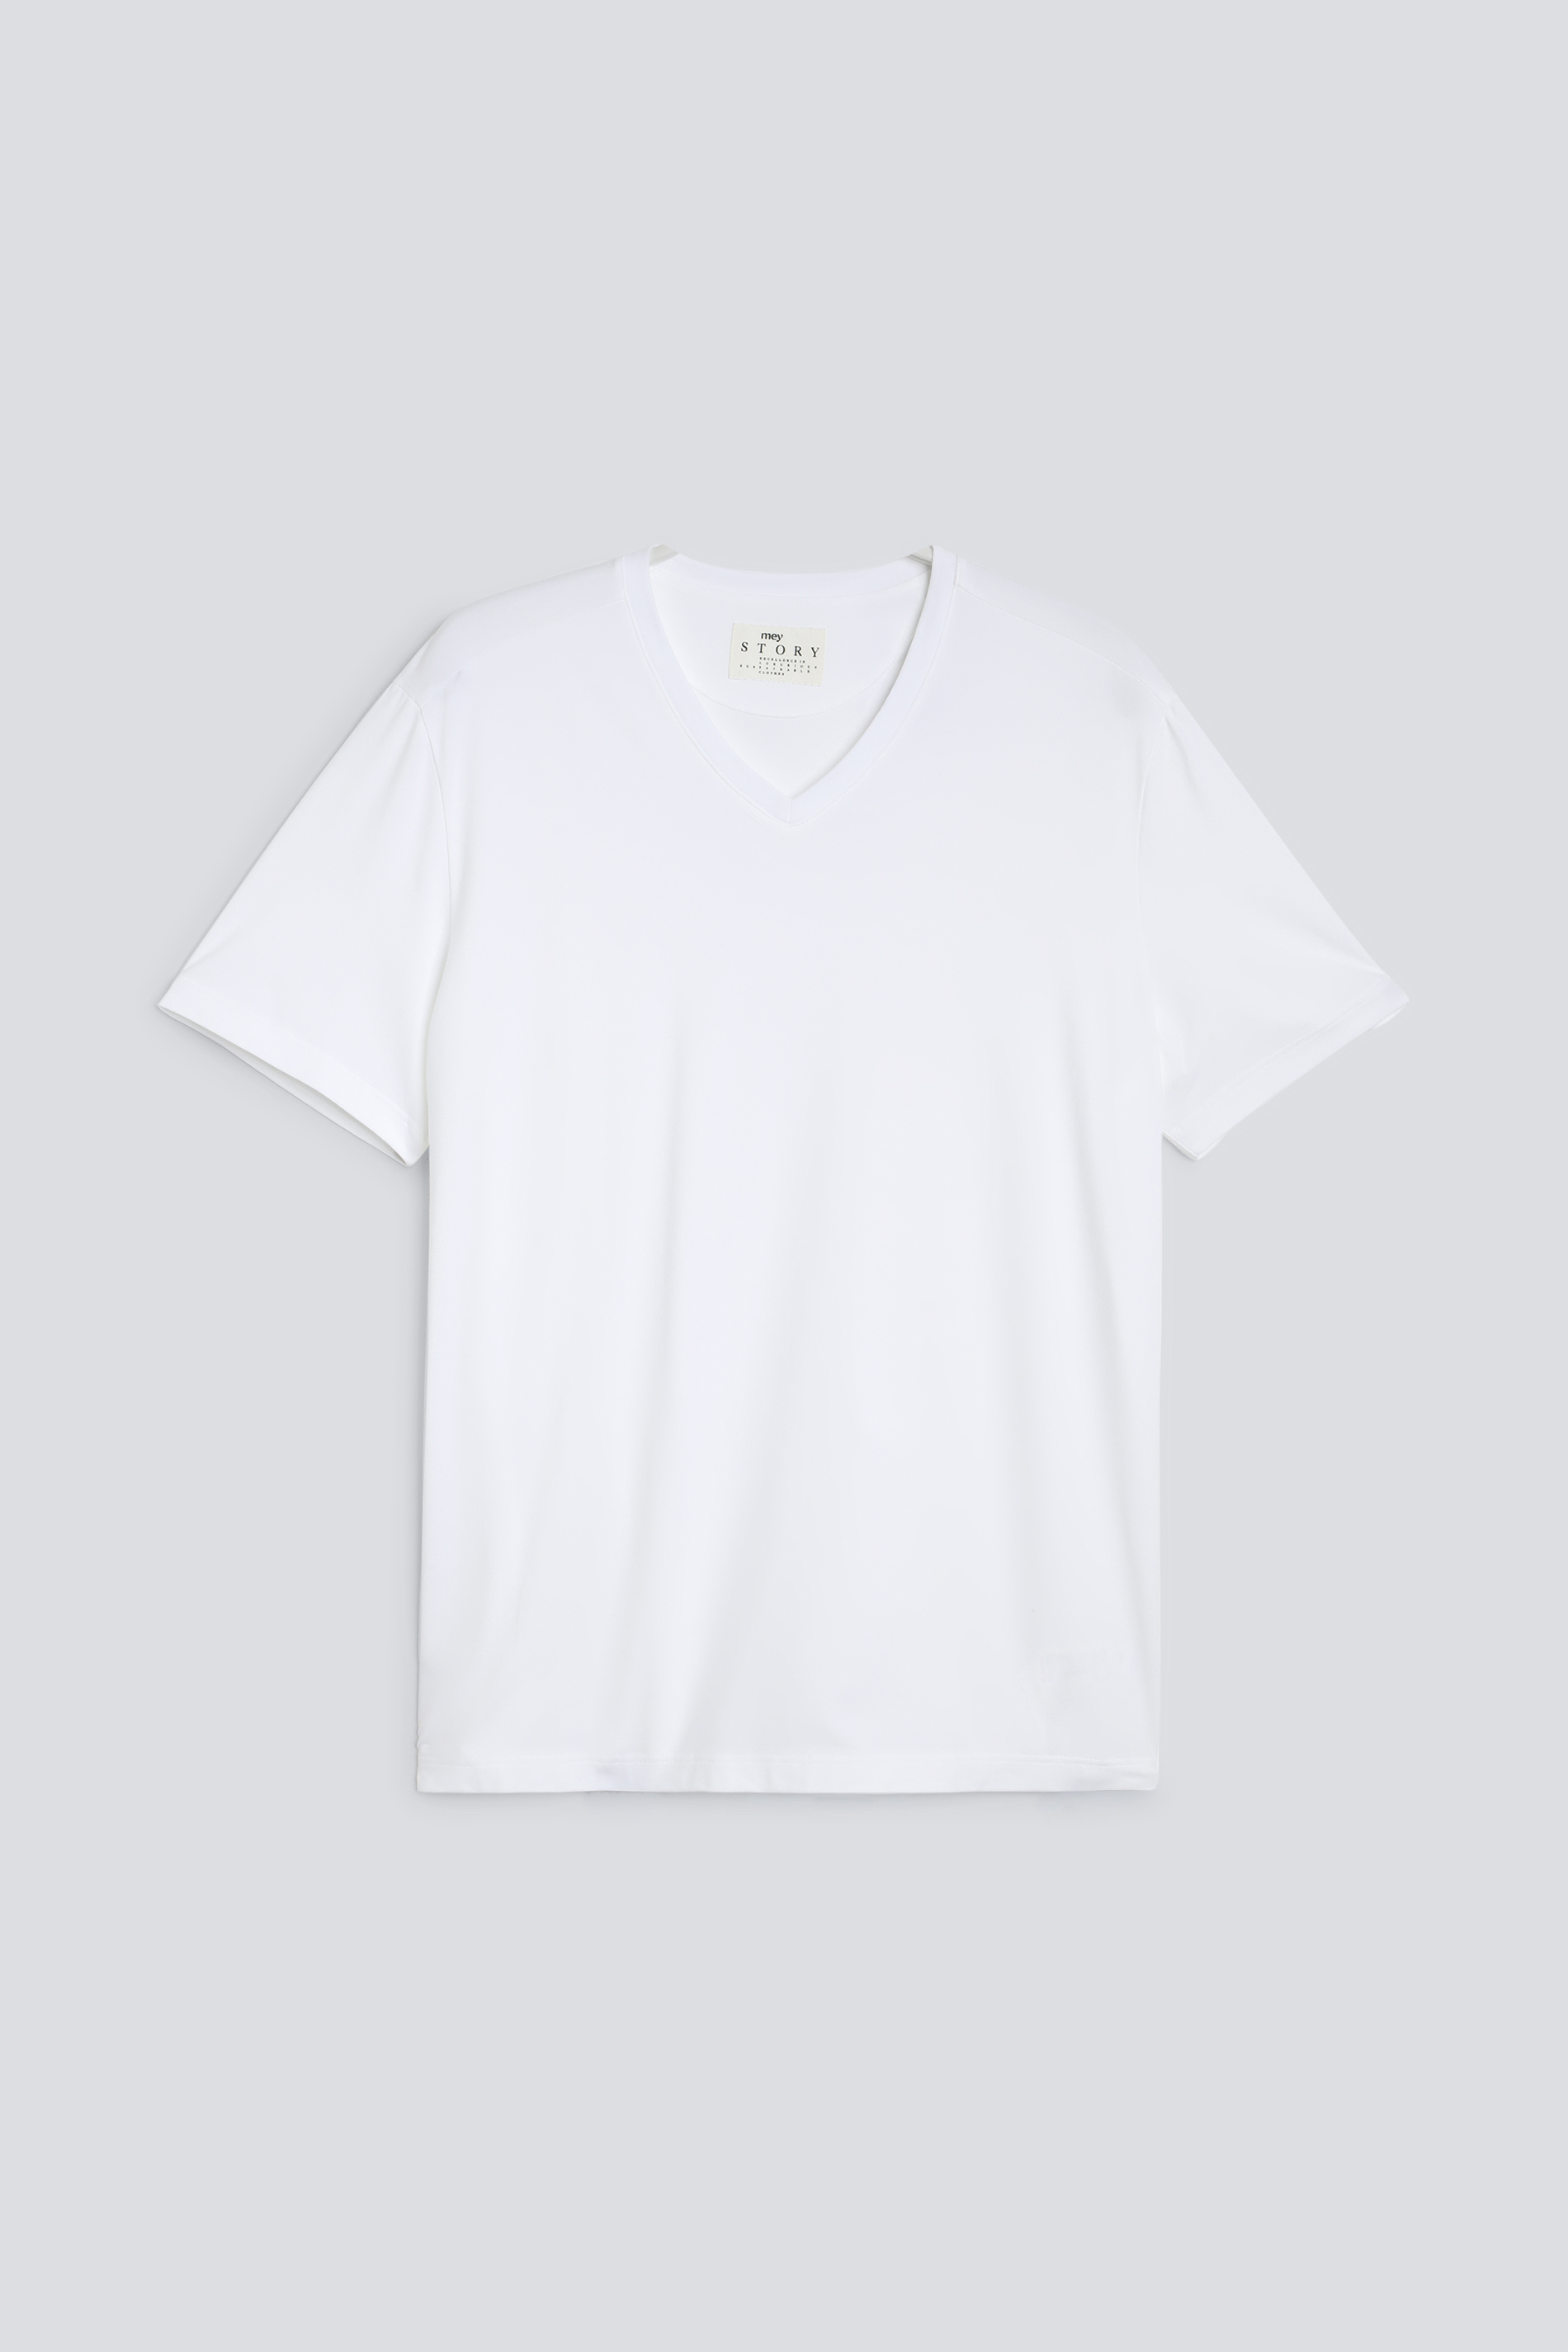 T-shirt Serie Cotone Strech Front View | mey®